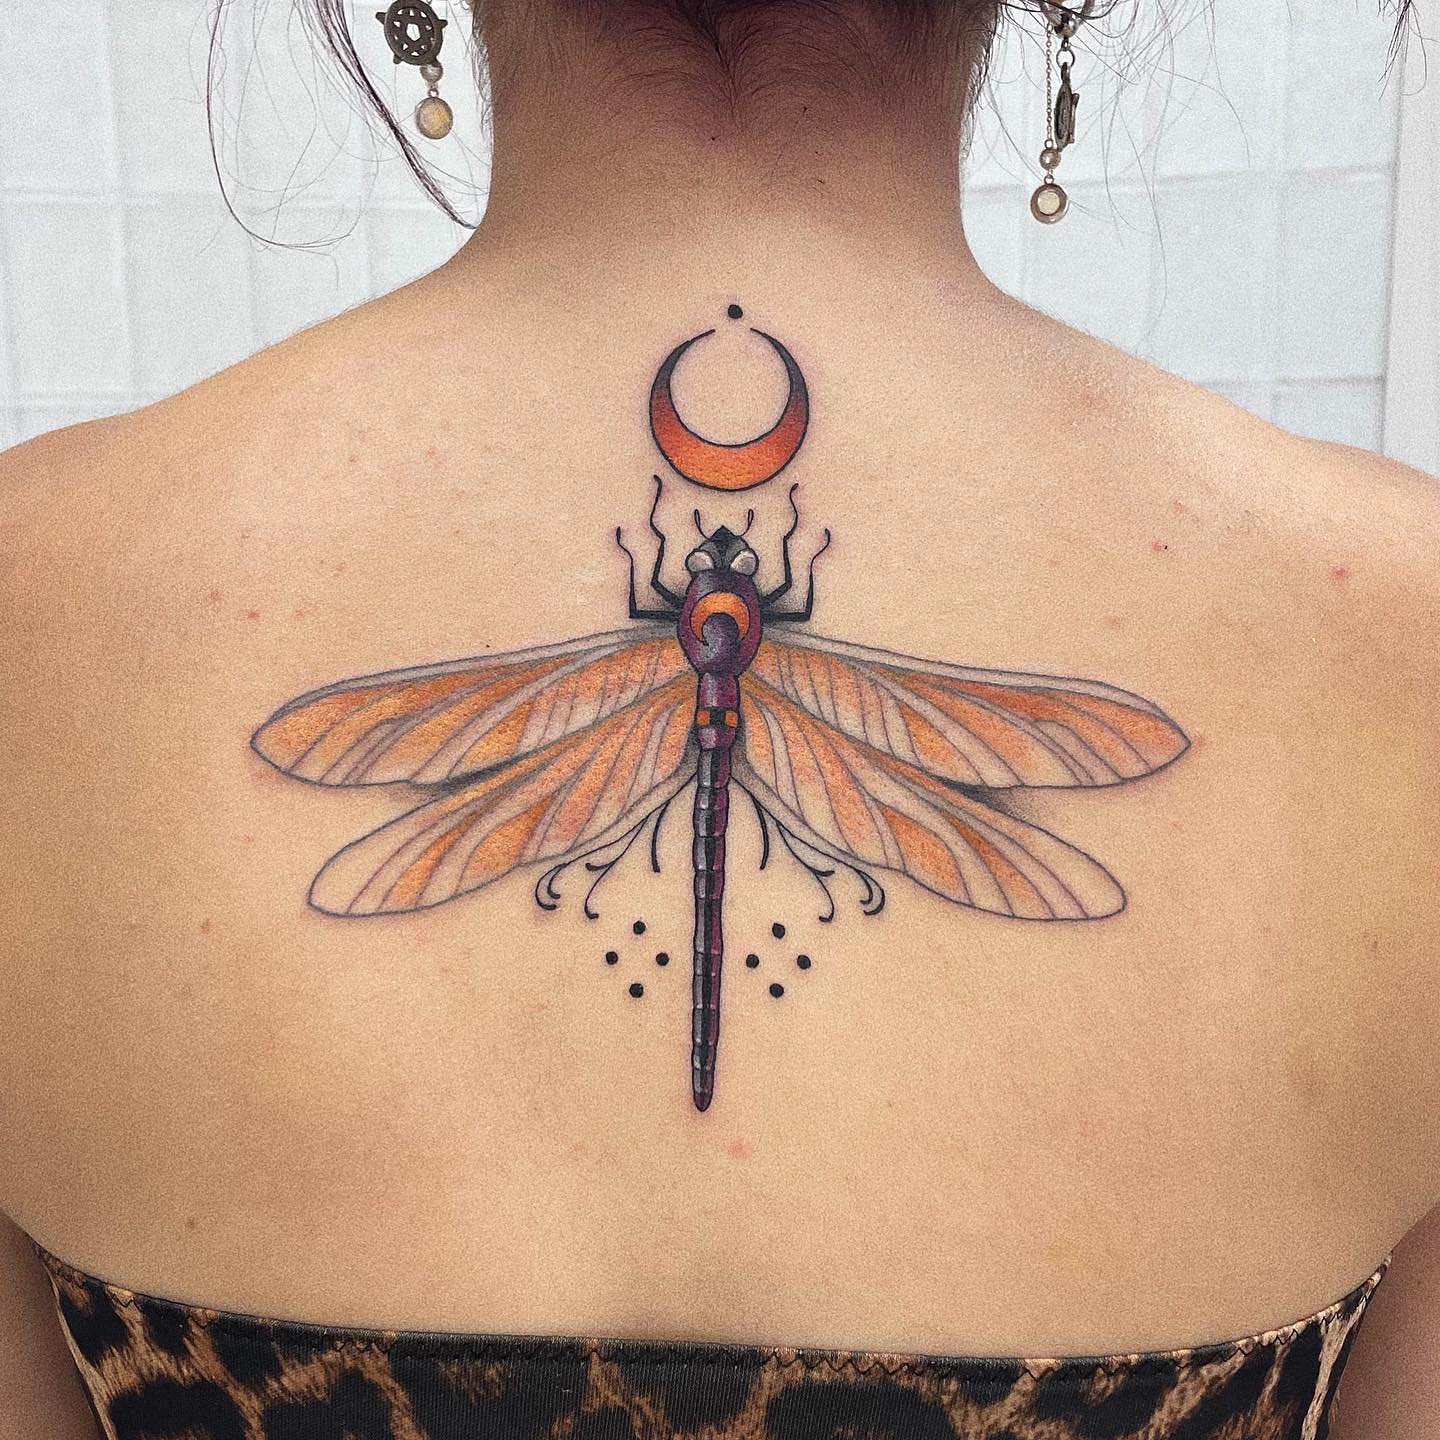 Tatuaje Genial En La Espalda De Una Libélula